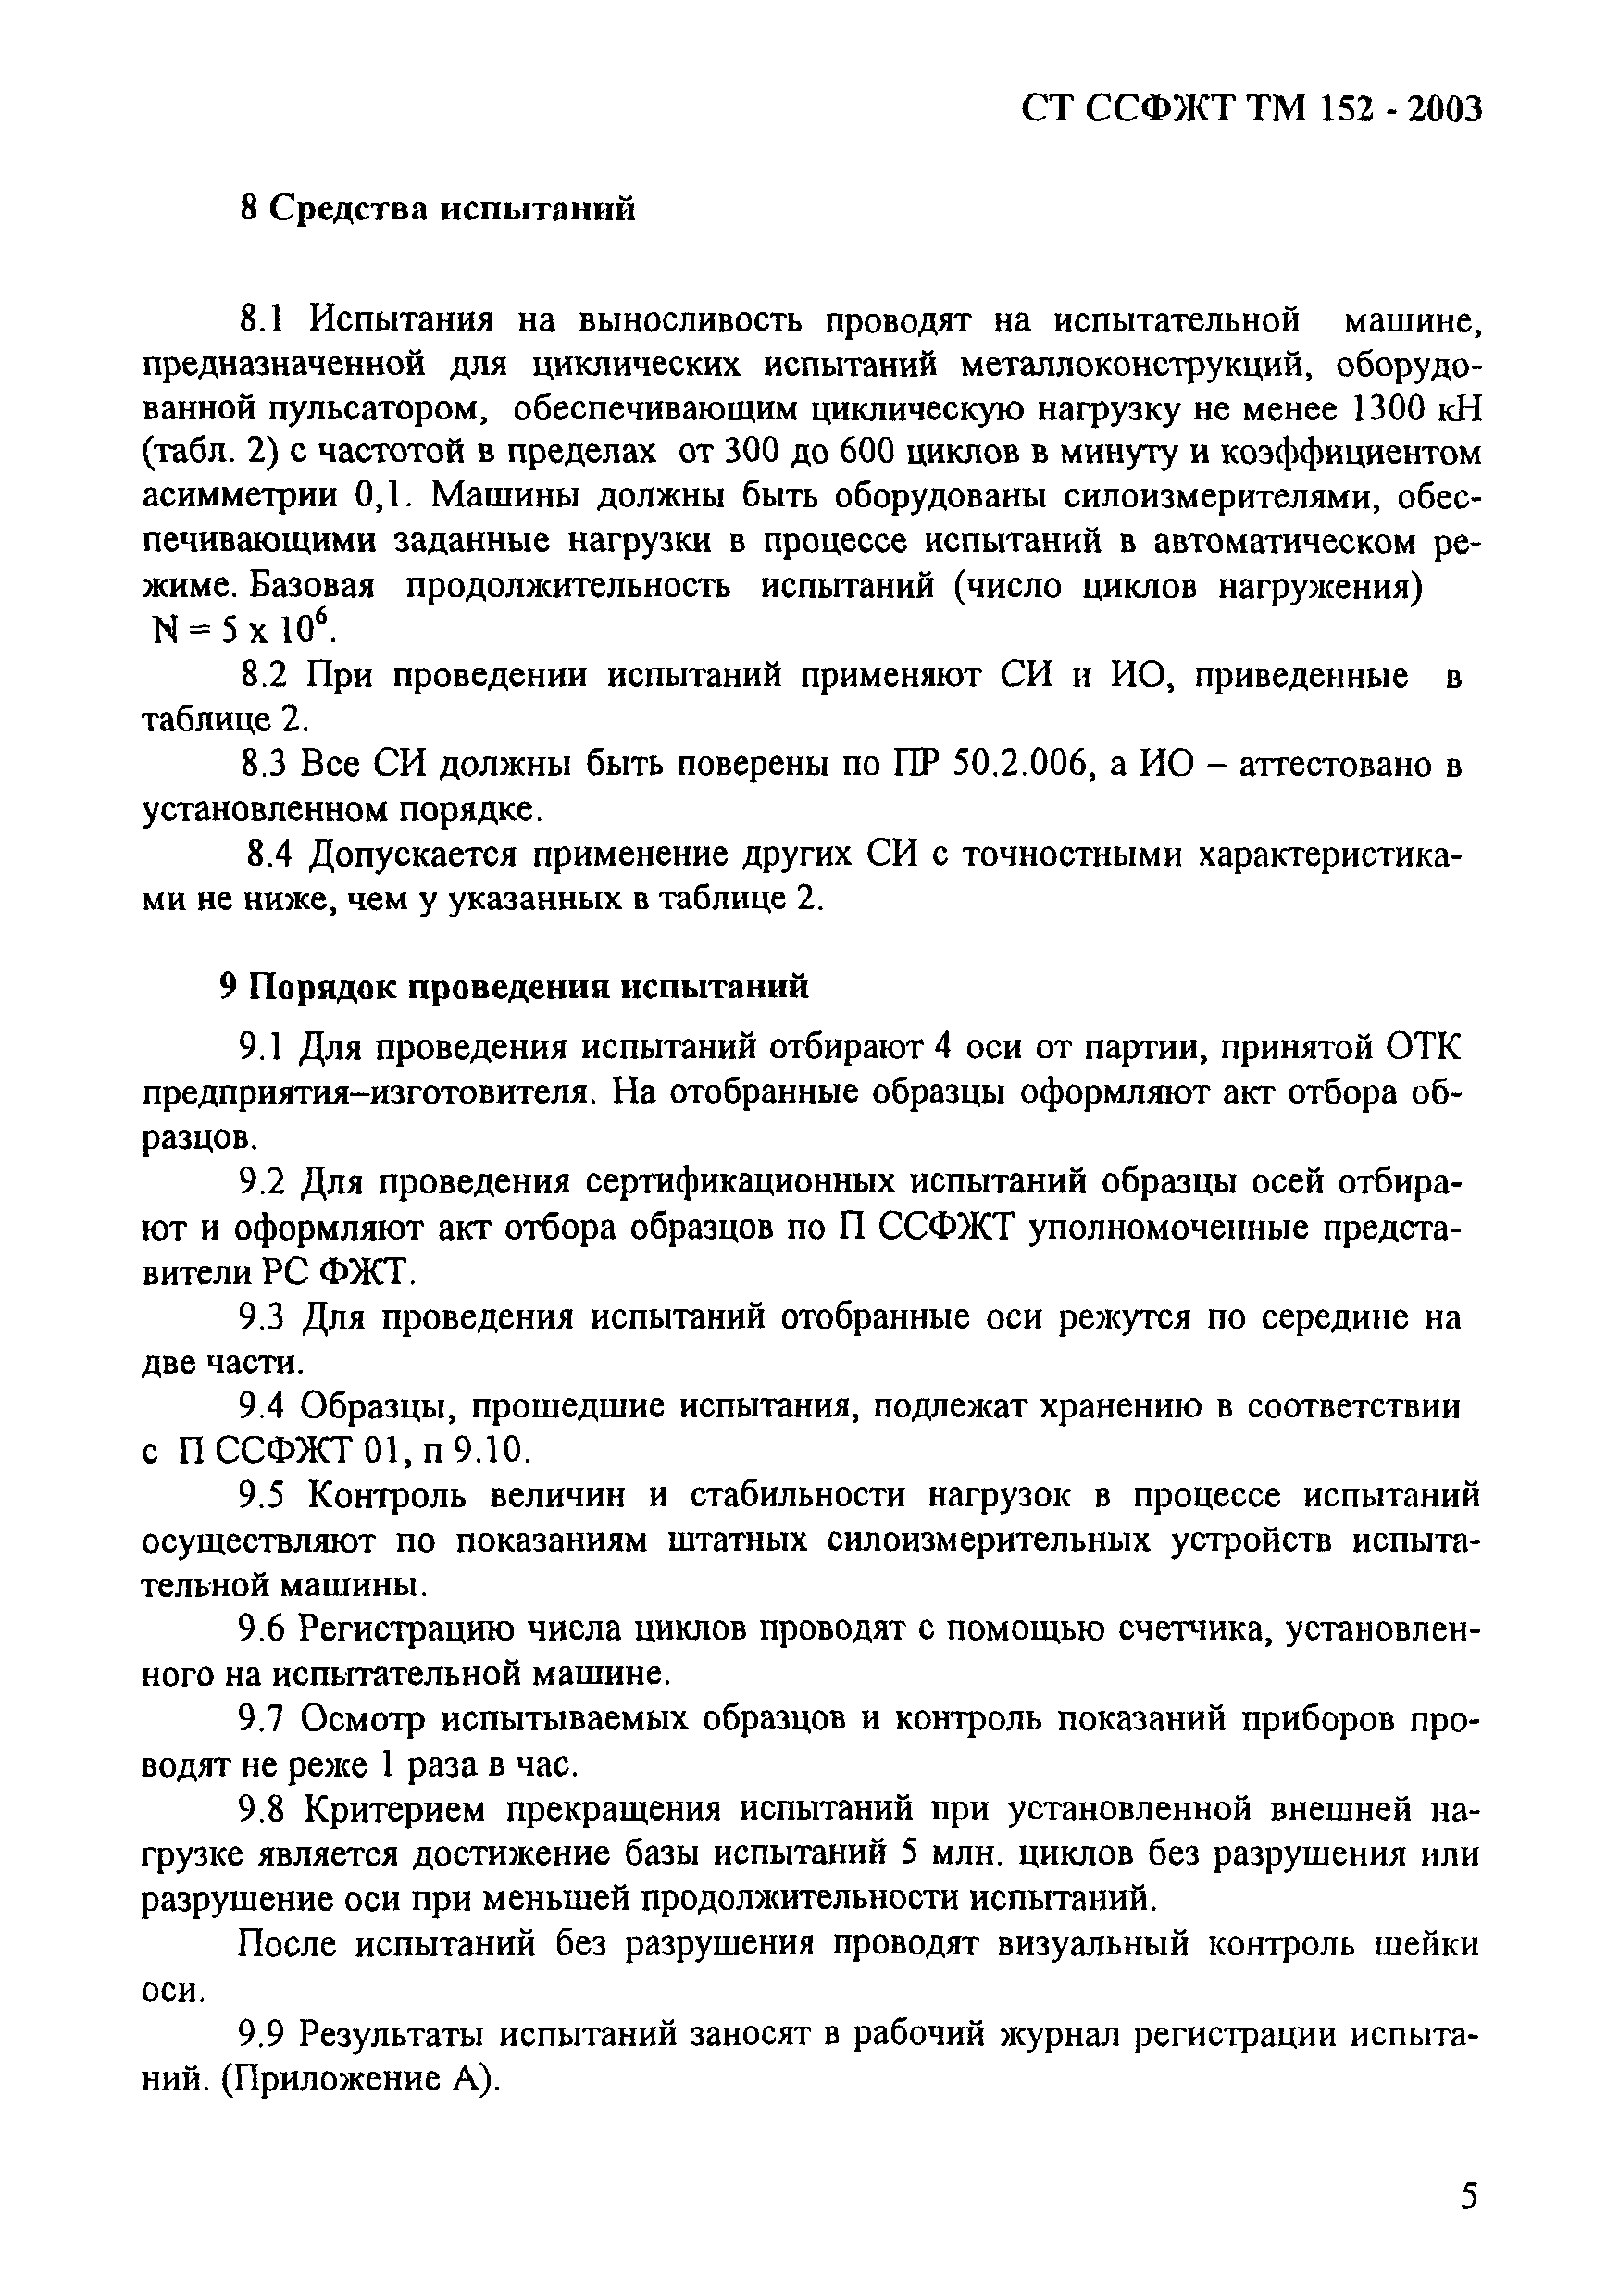 СТ ССФЖТ ТМ 152-2003